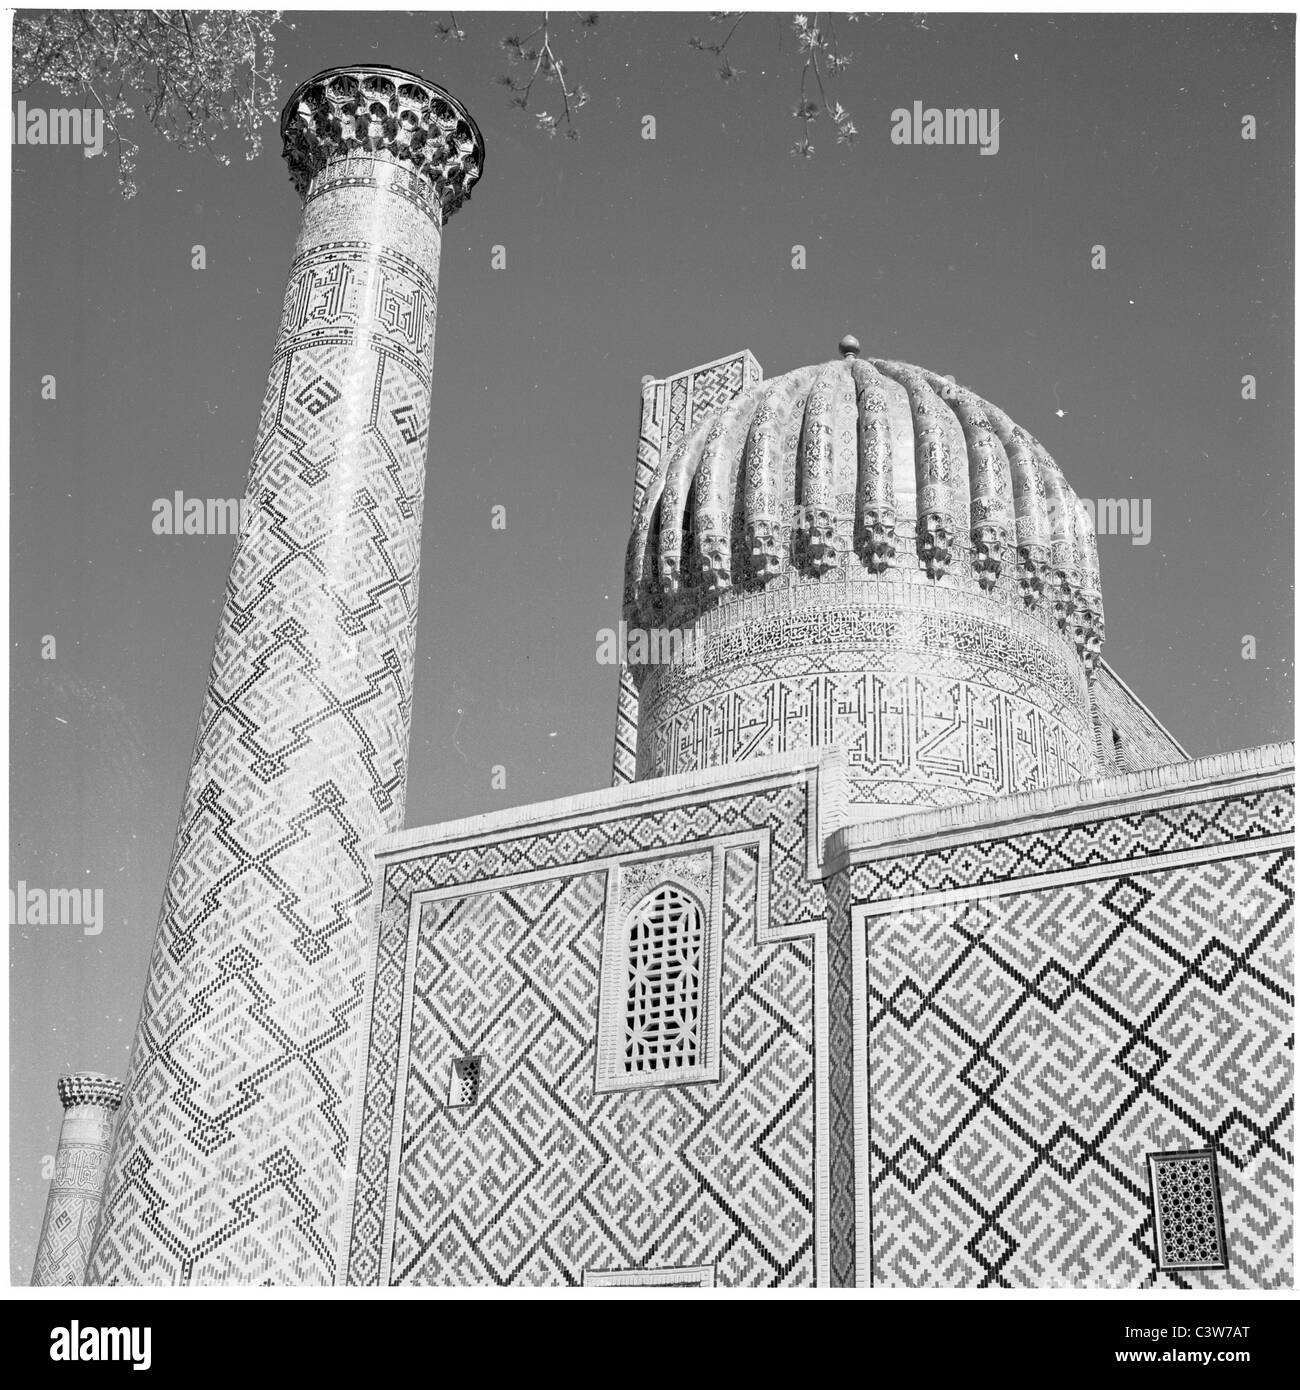 der 1950er Jahre in dieses Geschichtsbild durch J Allan Cash sehen wir die Shir-Dar-Madrasa in Registan-Platz, Smarkand, Usbekistan. Stockfoto